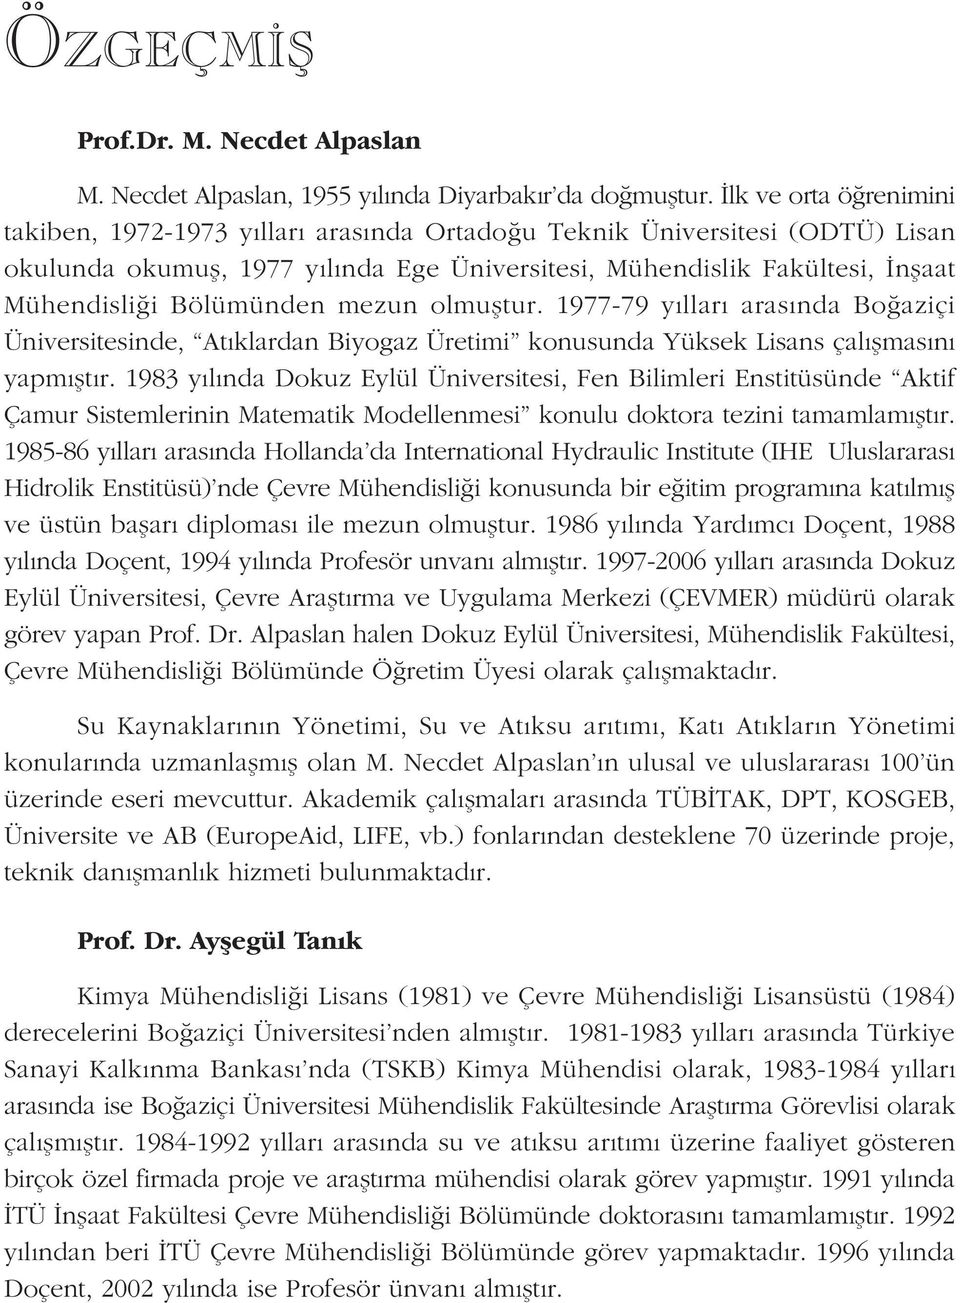 Bölümünden mezun olmuþtur. 1977-79 yýllarý arasýnda Boðaziçi Üniversitesinde, Atýklardan Biyogaz Üretimi konusunda Yüksek Lisans çalýþmasýný yapmýþtýr.